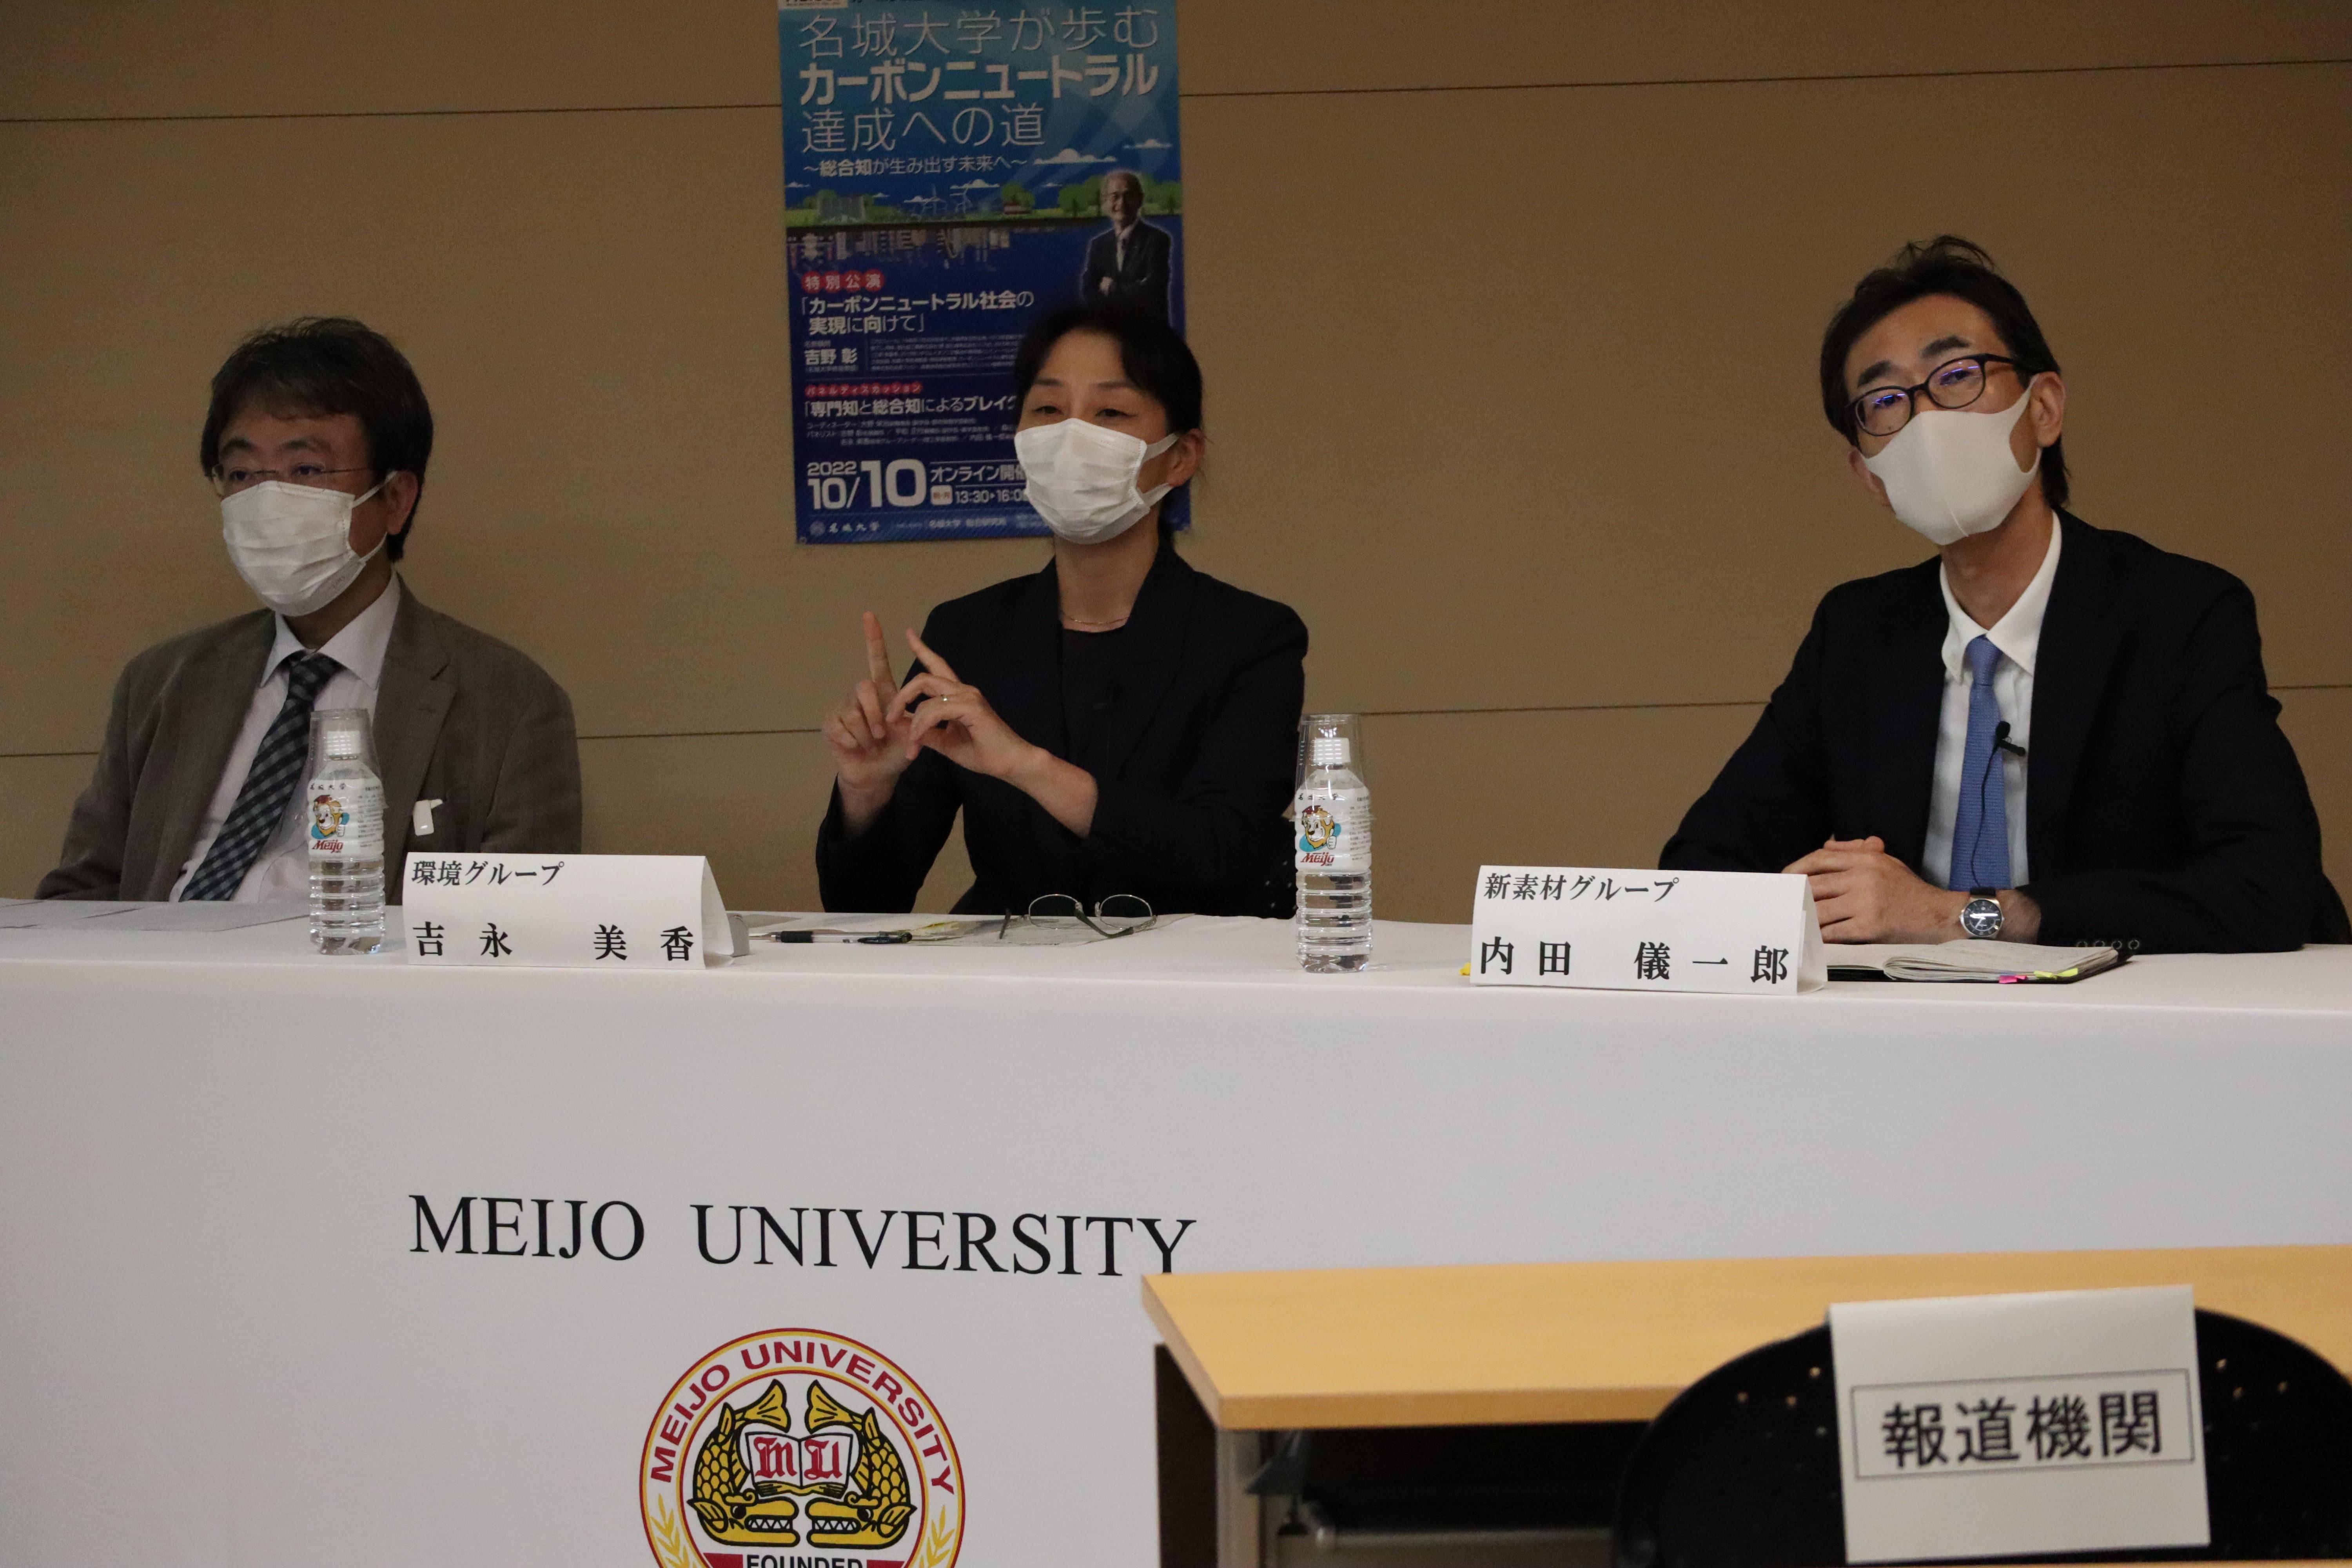 （左から）森杉雅史都市情報学部教授、吉永美香理工学部教授、内田儀一郎理工学部教授